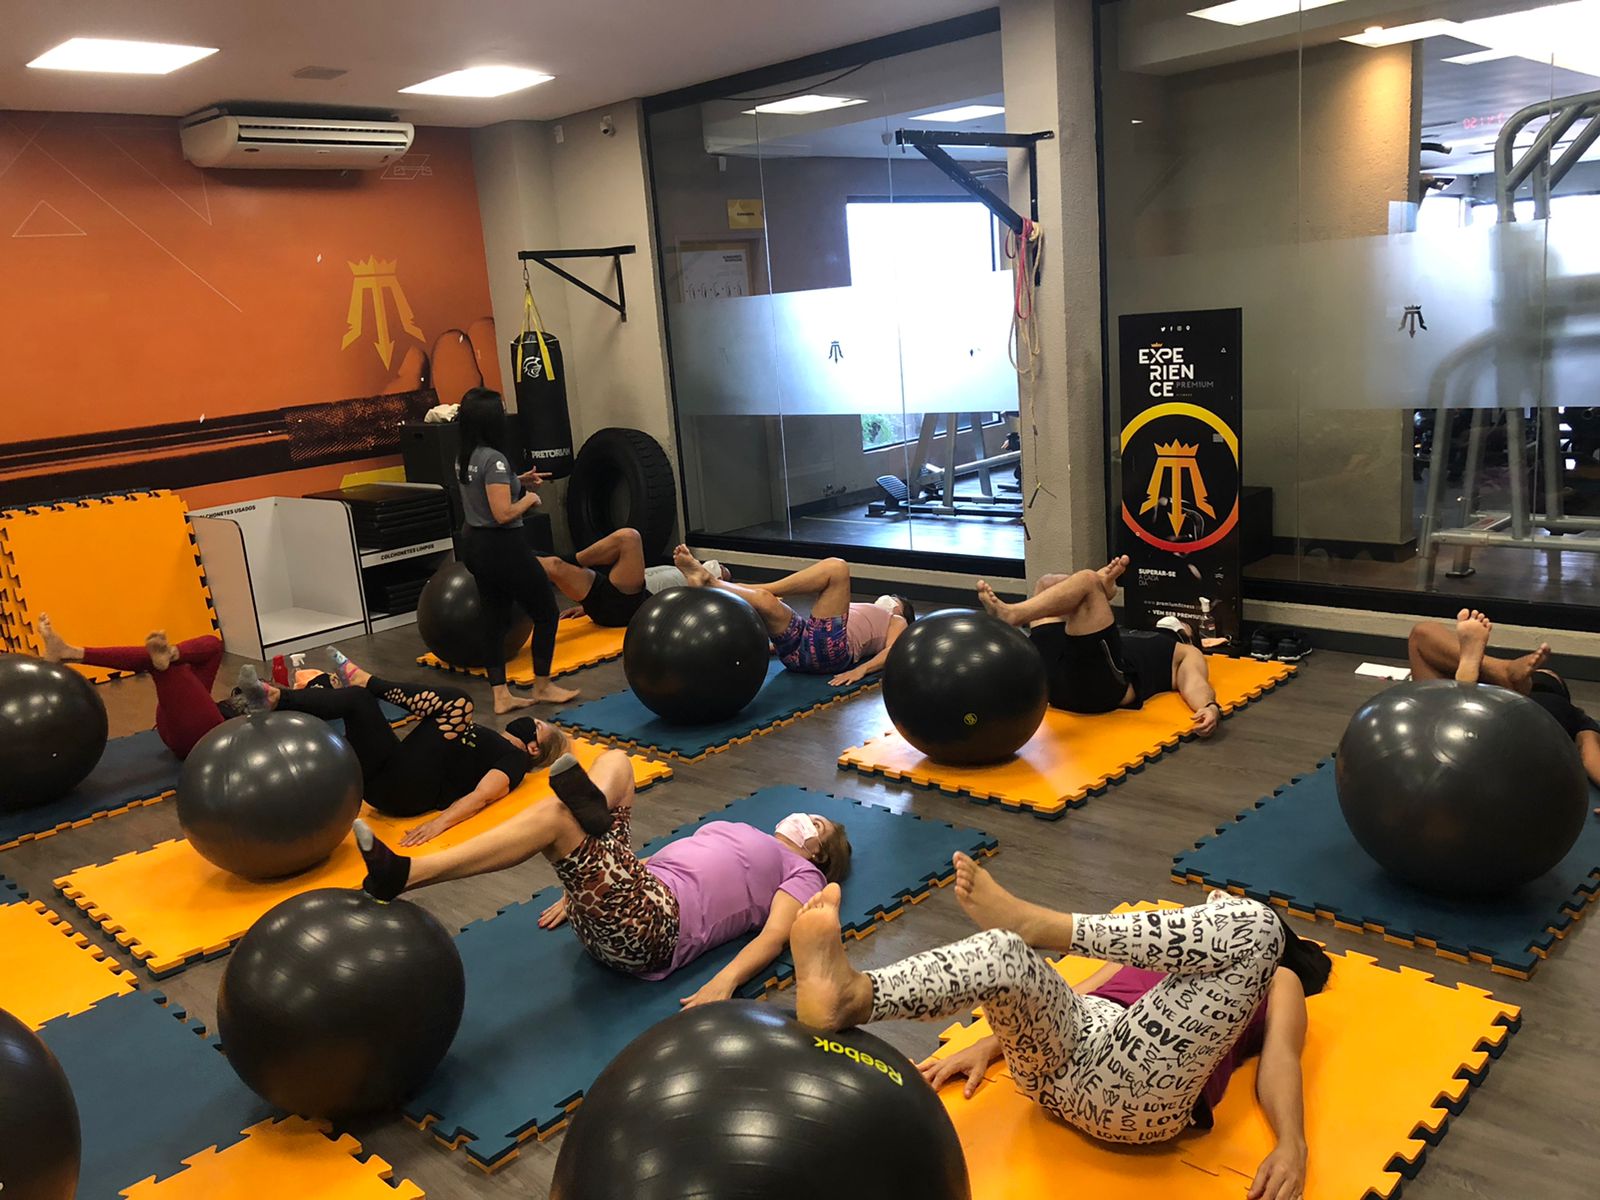  PILATES SOLO |  Modalidade Prem1um Fitness | Academia em Maceió | O seu espaço fitness e wellness em Maceió